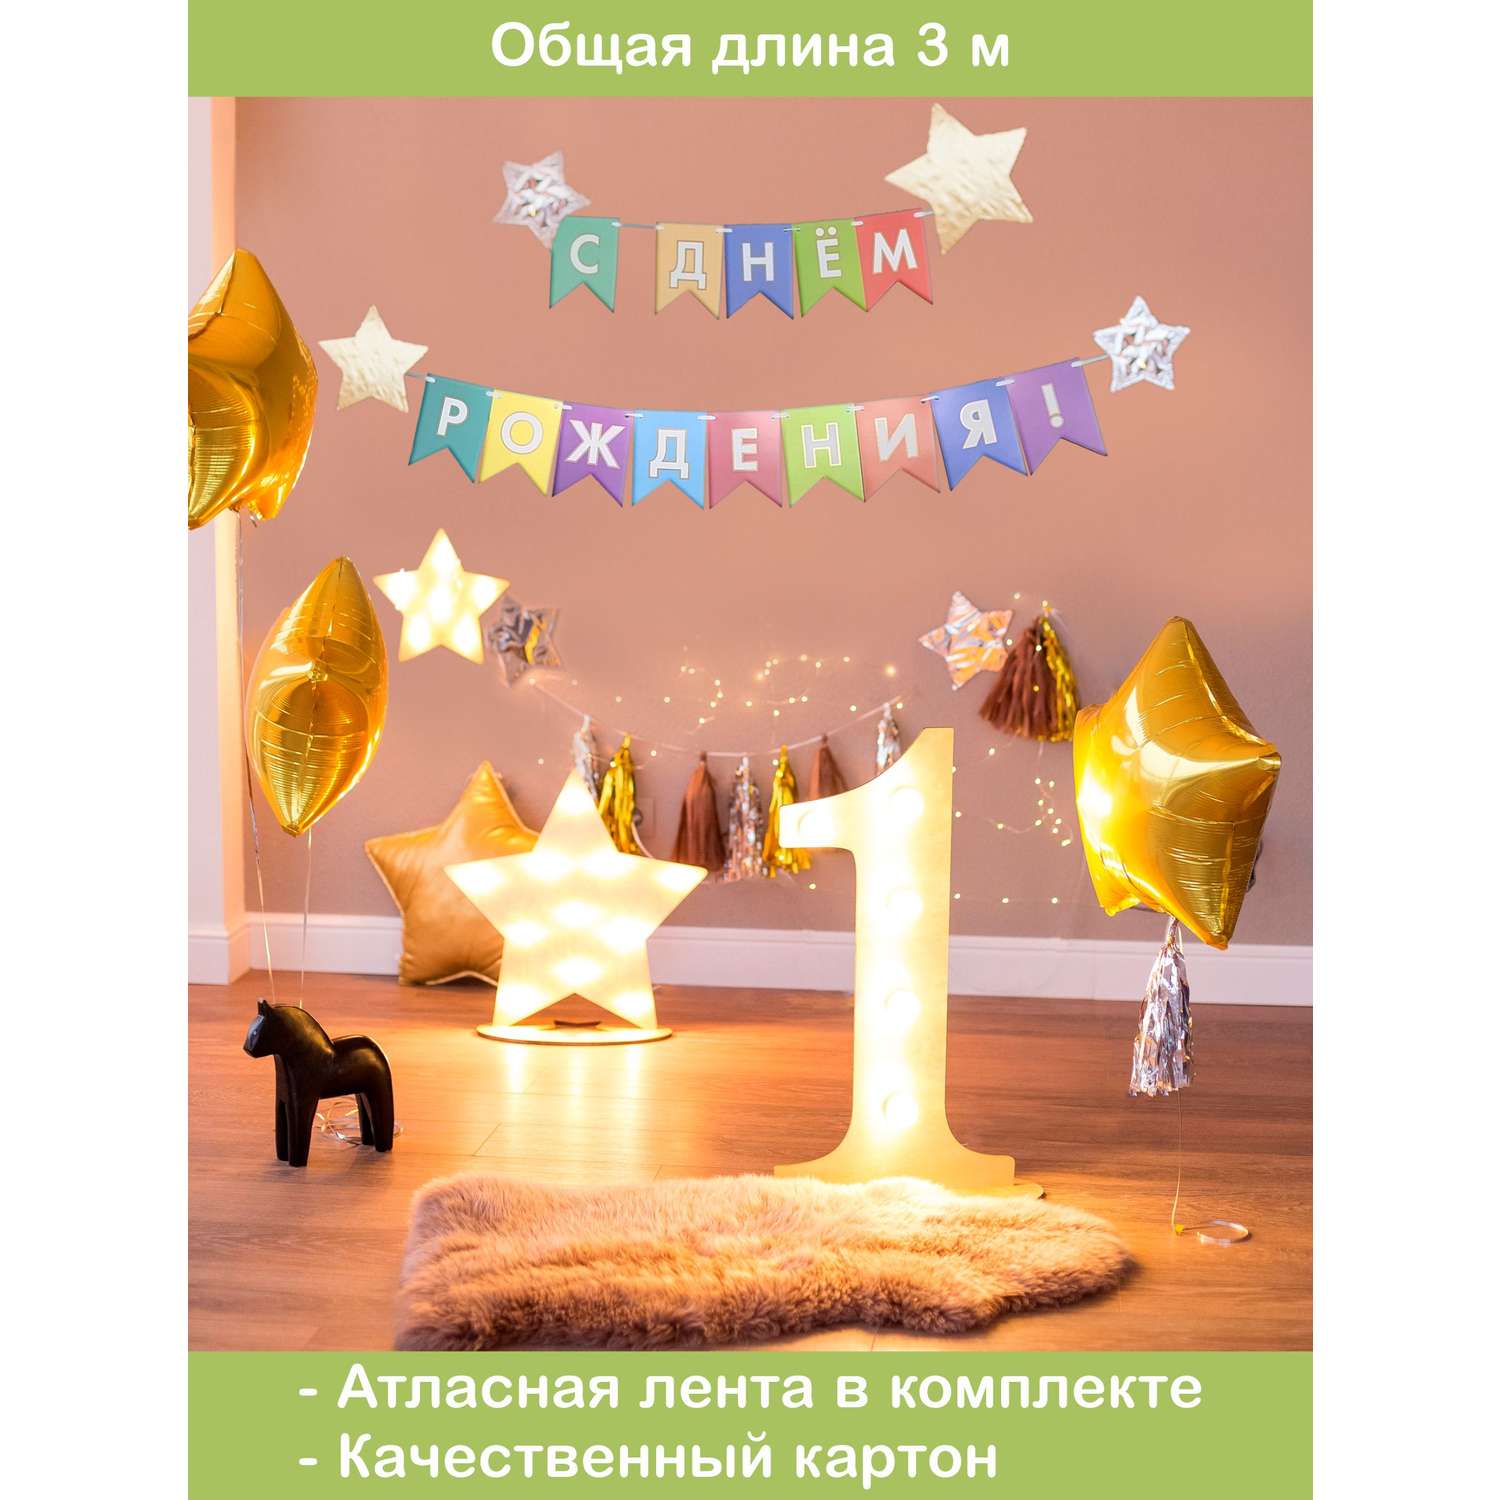 Изготовление объемных букв на праздник в Санкт-Петербурге